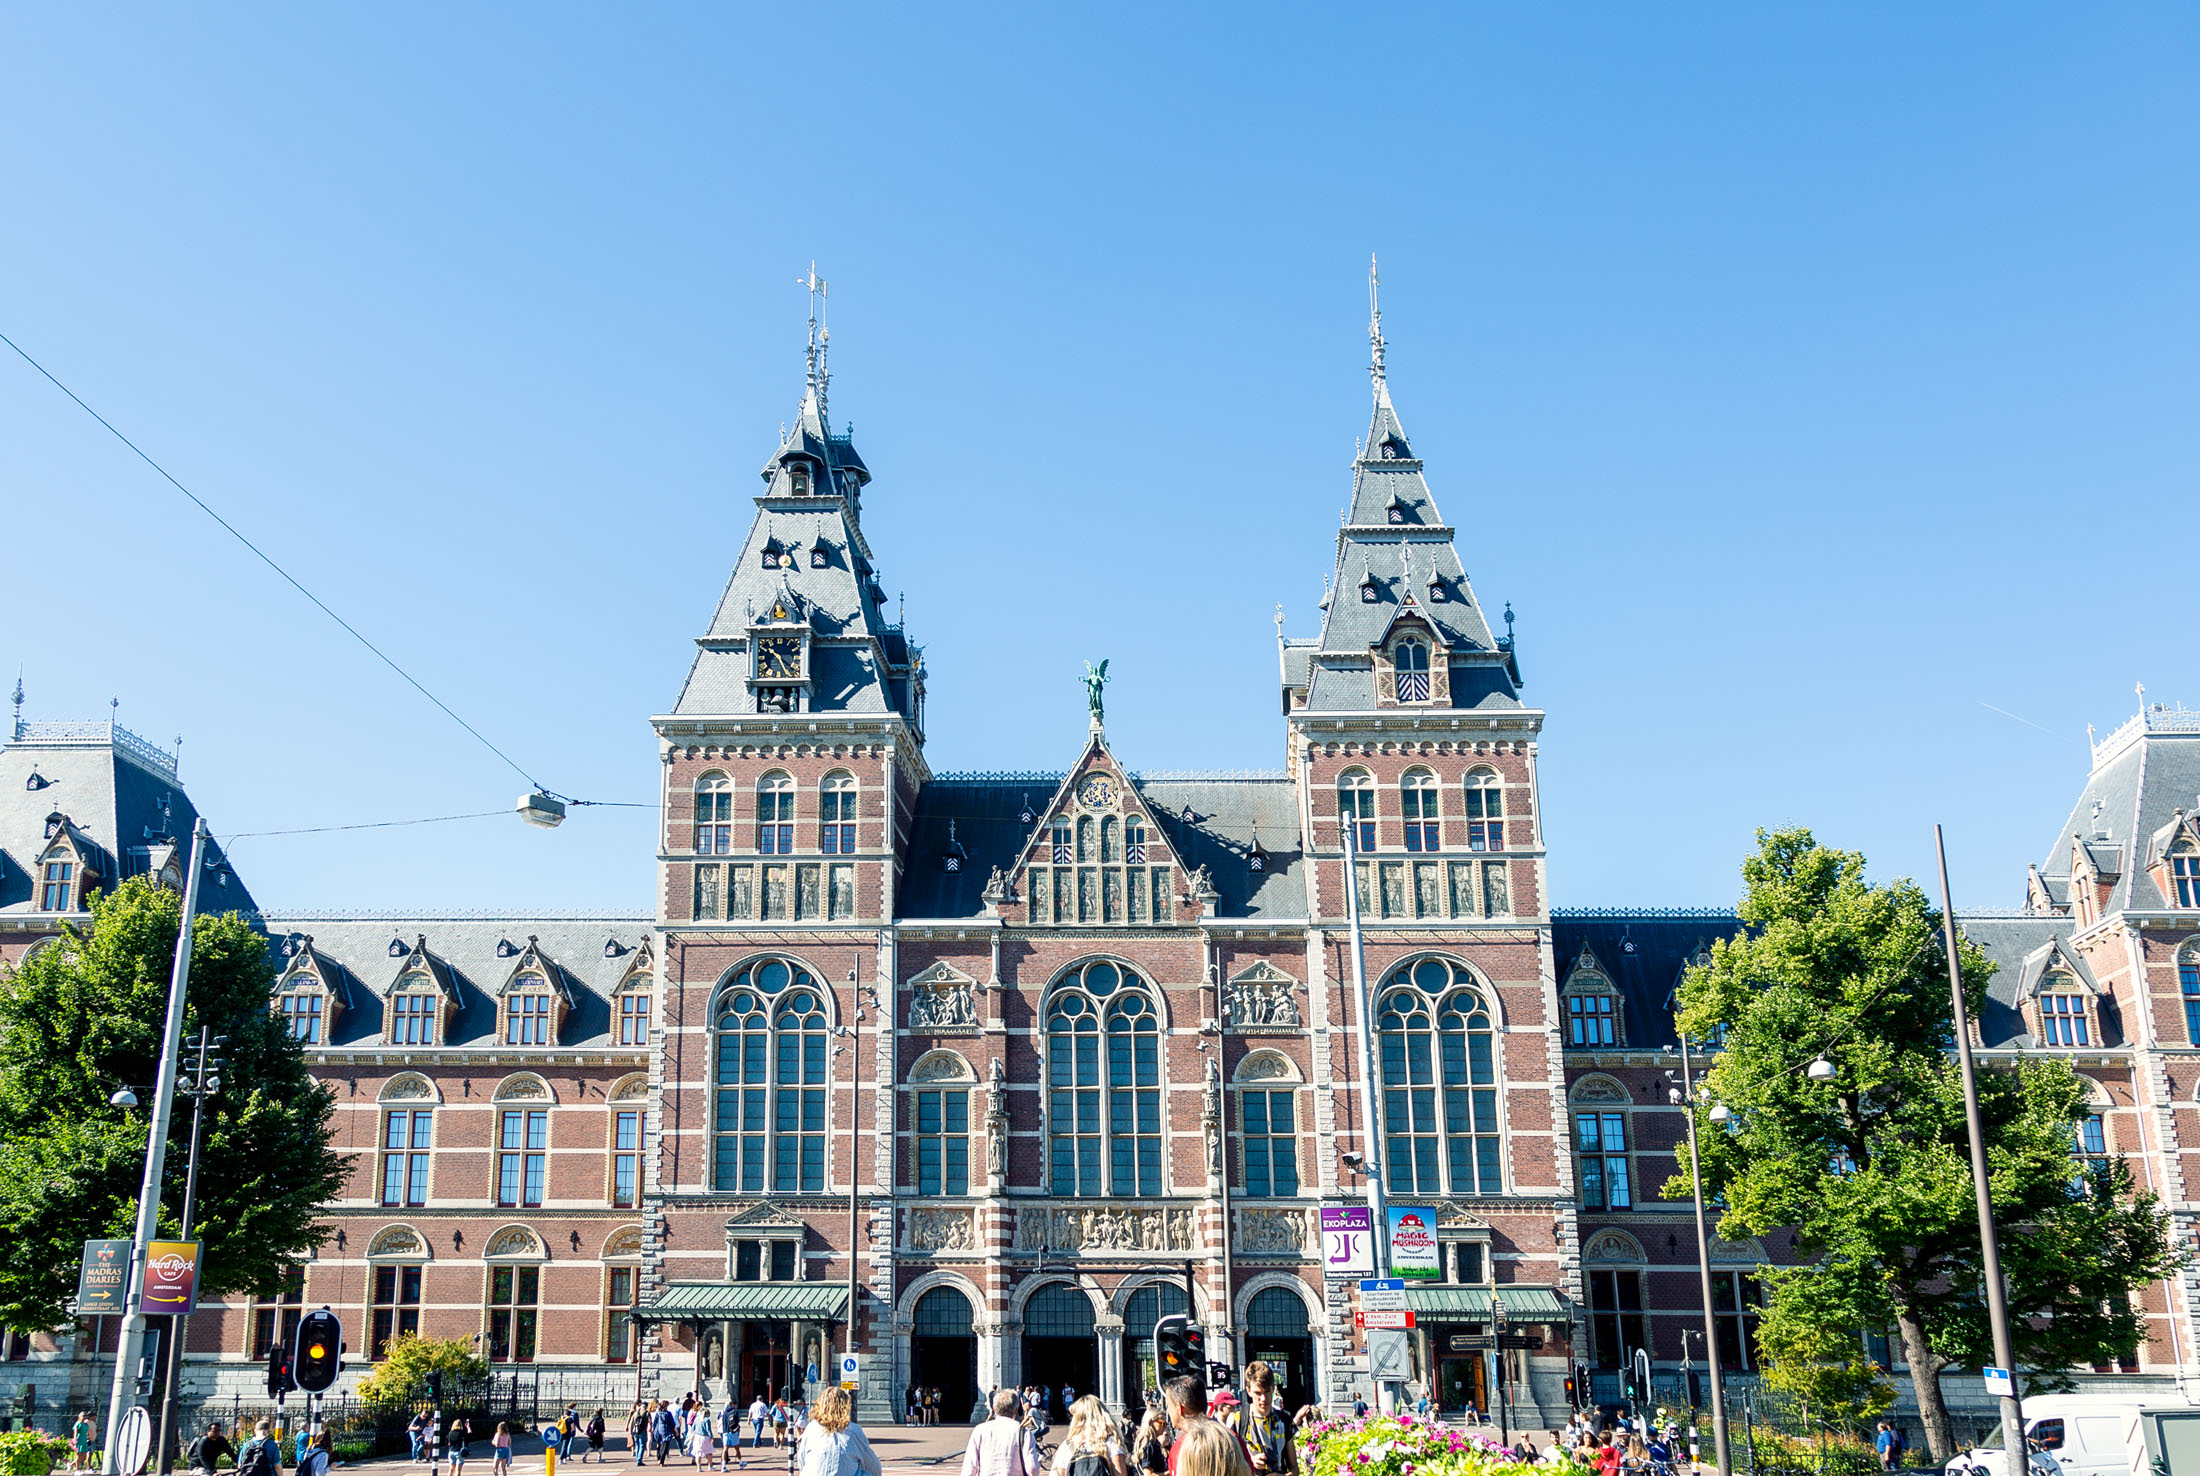 Rijksmuseum amsterdam